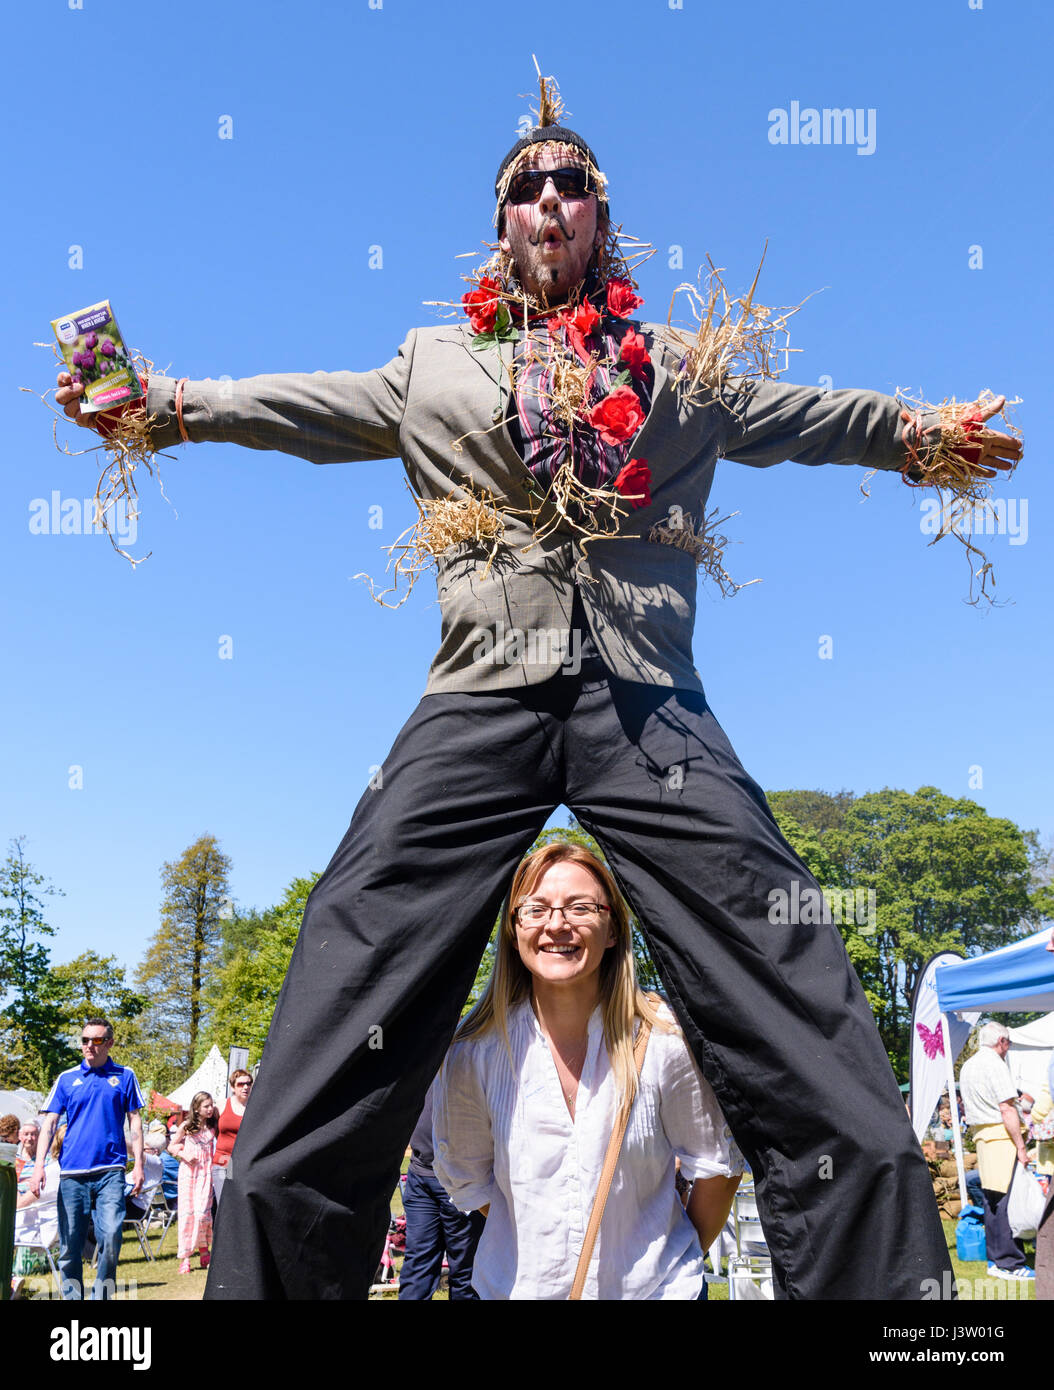 A woman peeks through the legs of a stilt-walking scarecrow. Stock Photo